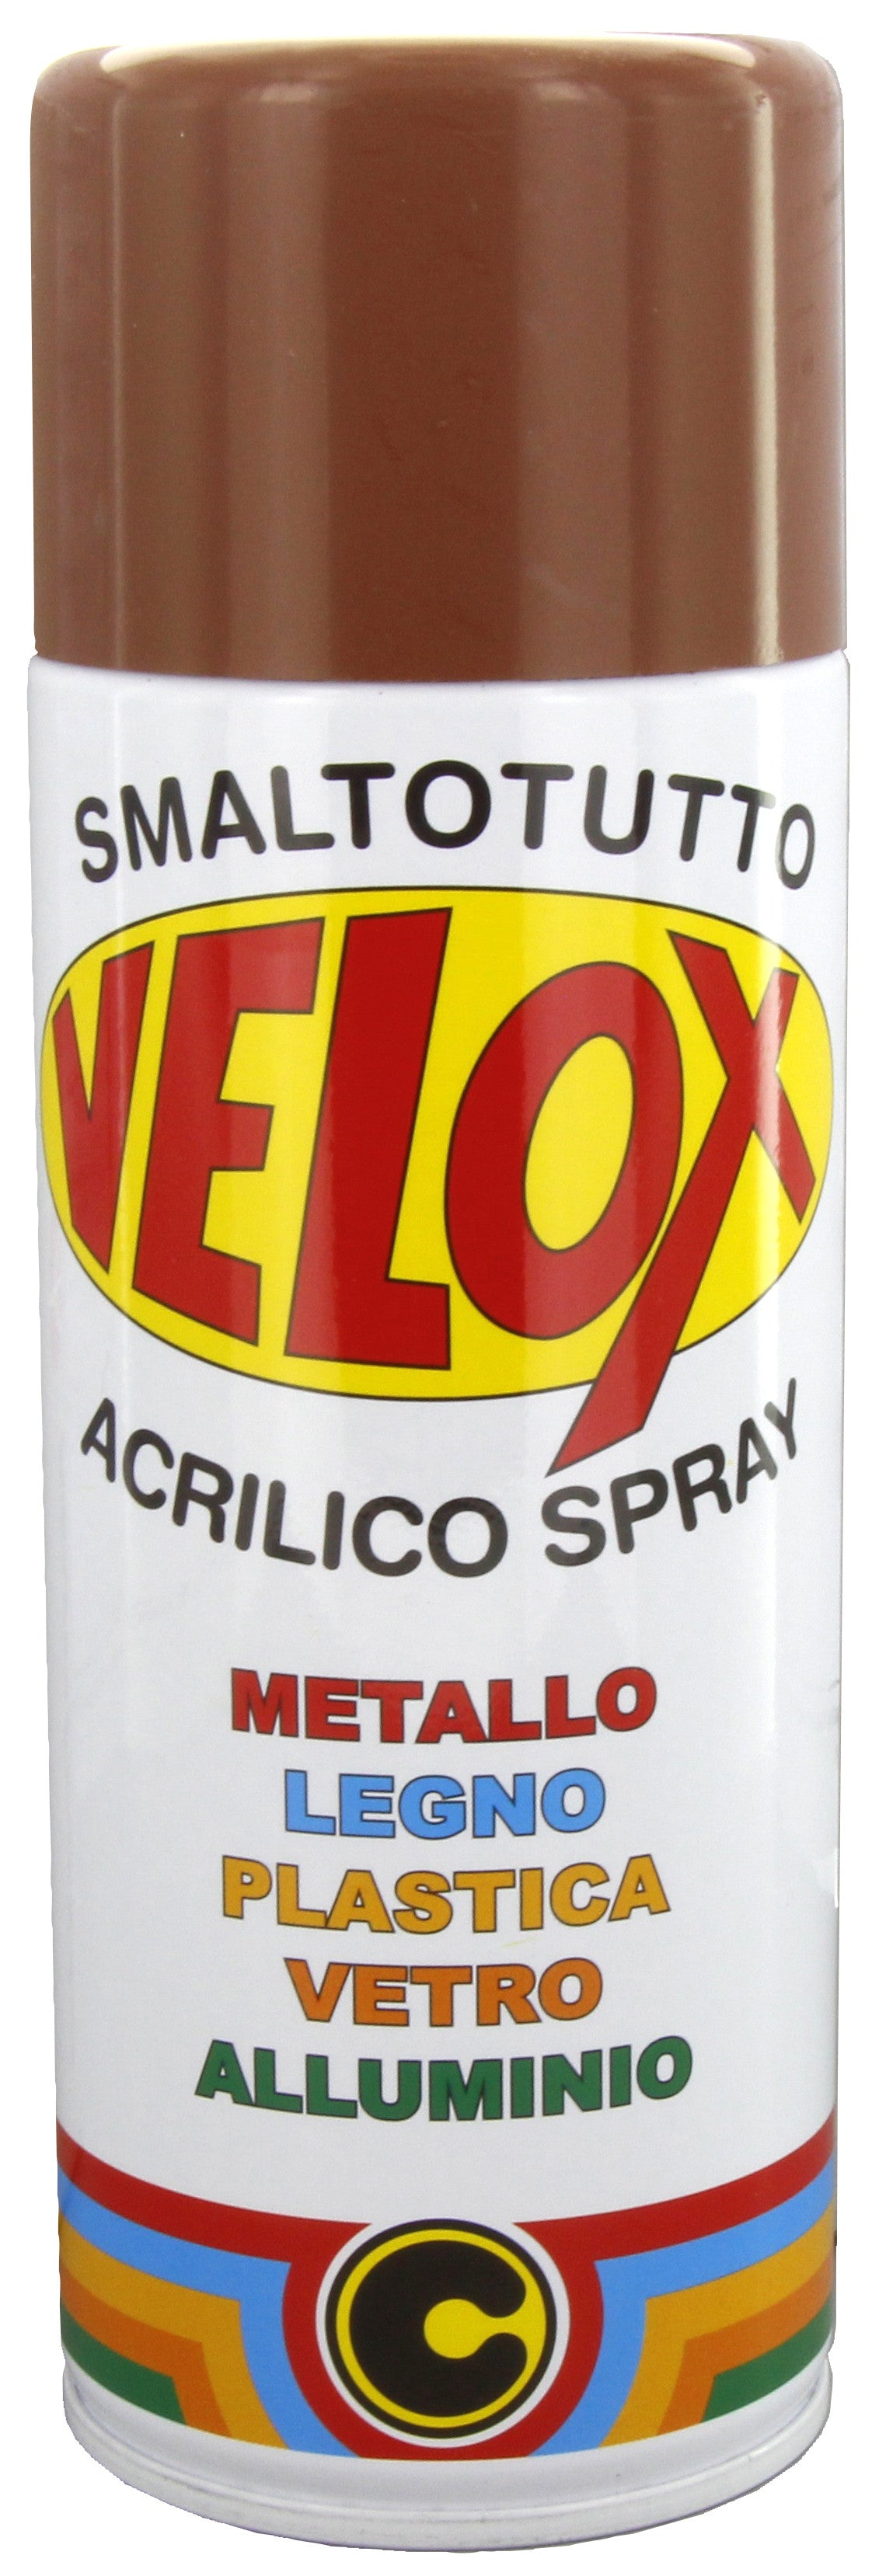 Velox spray acrilico marrone segnale ral 8002 ITAL G.E.T.E.